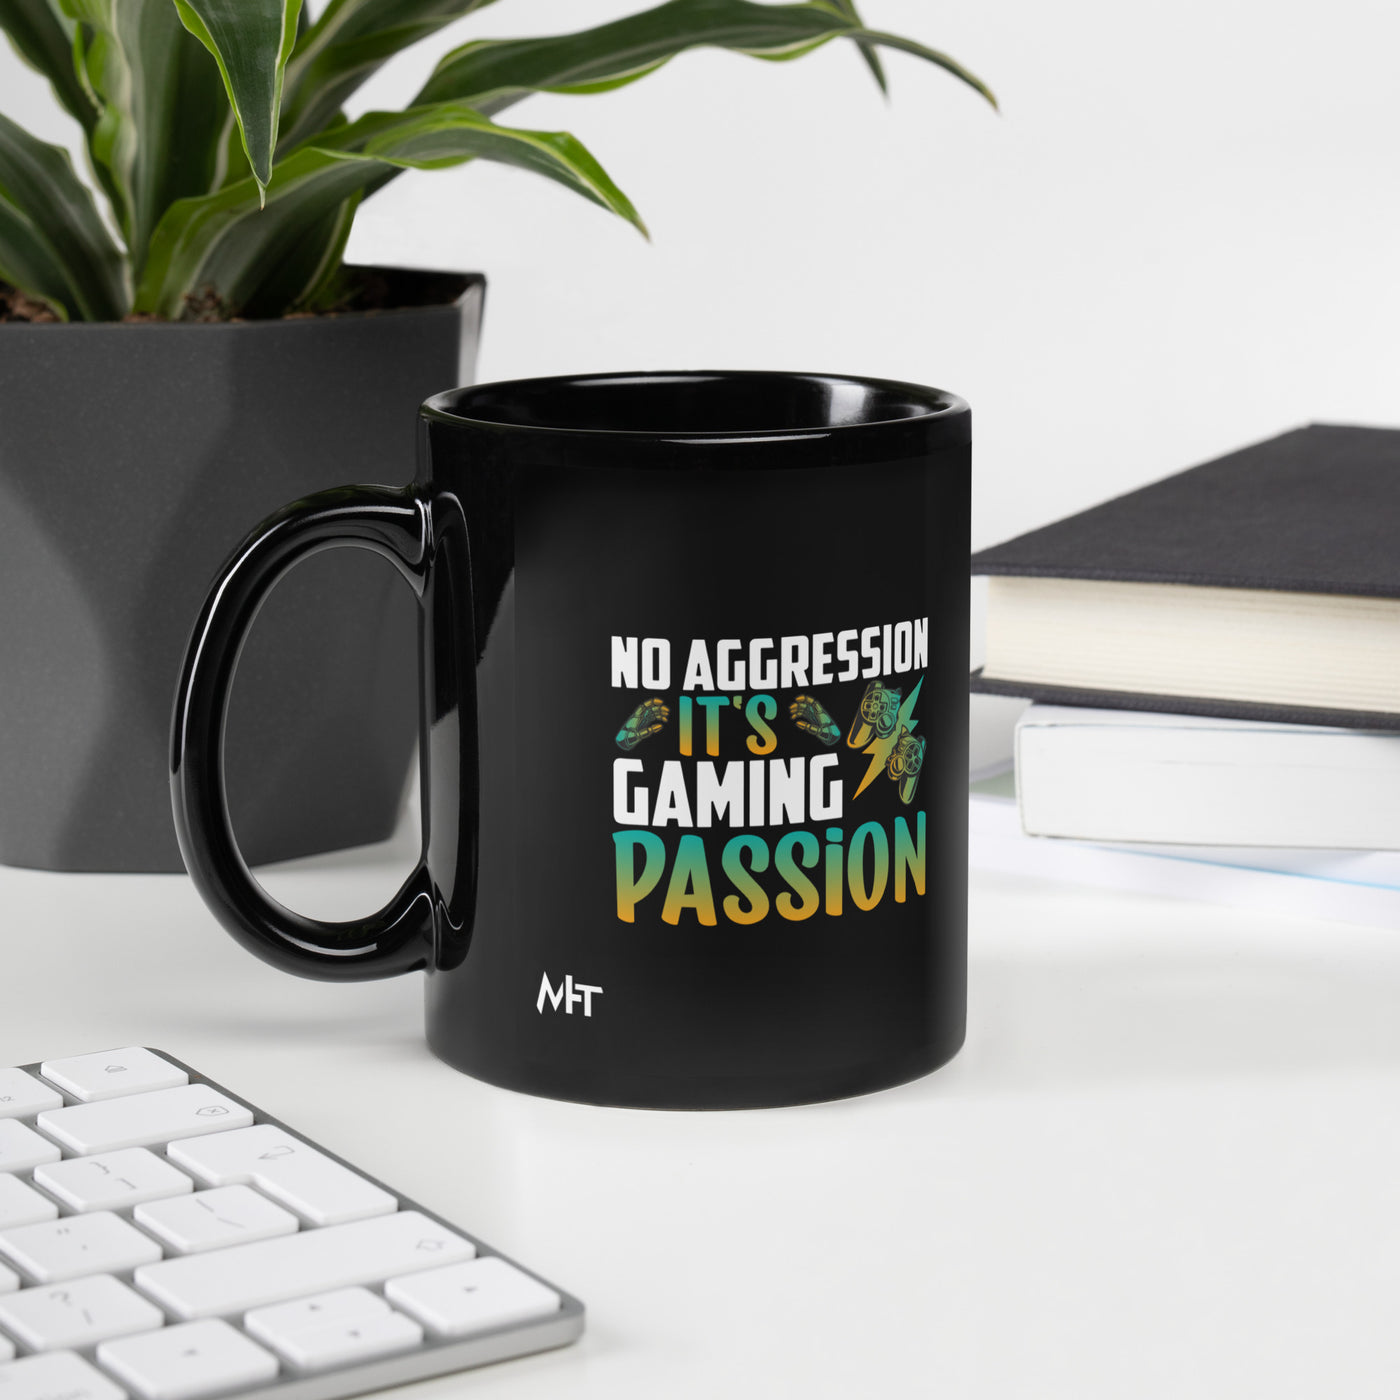 No Aggression, It's Gaming Passion - Black Glossy Mug